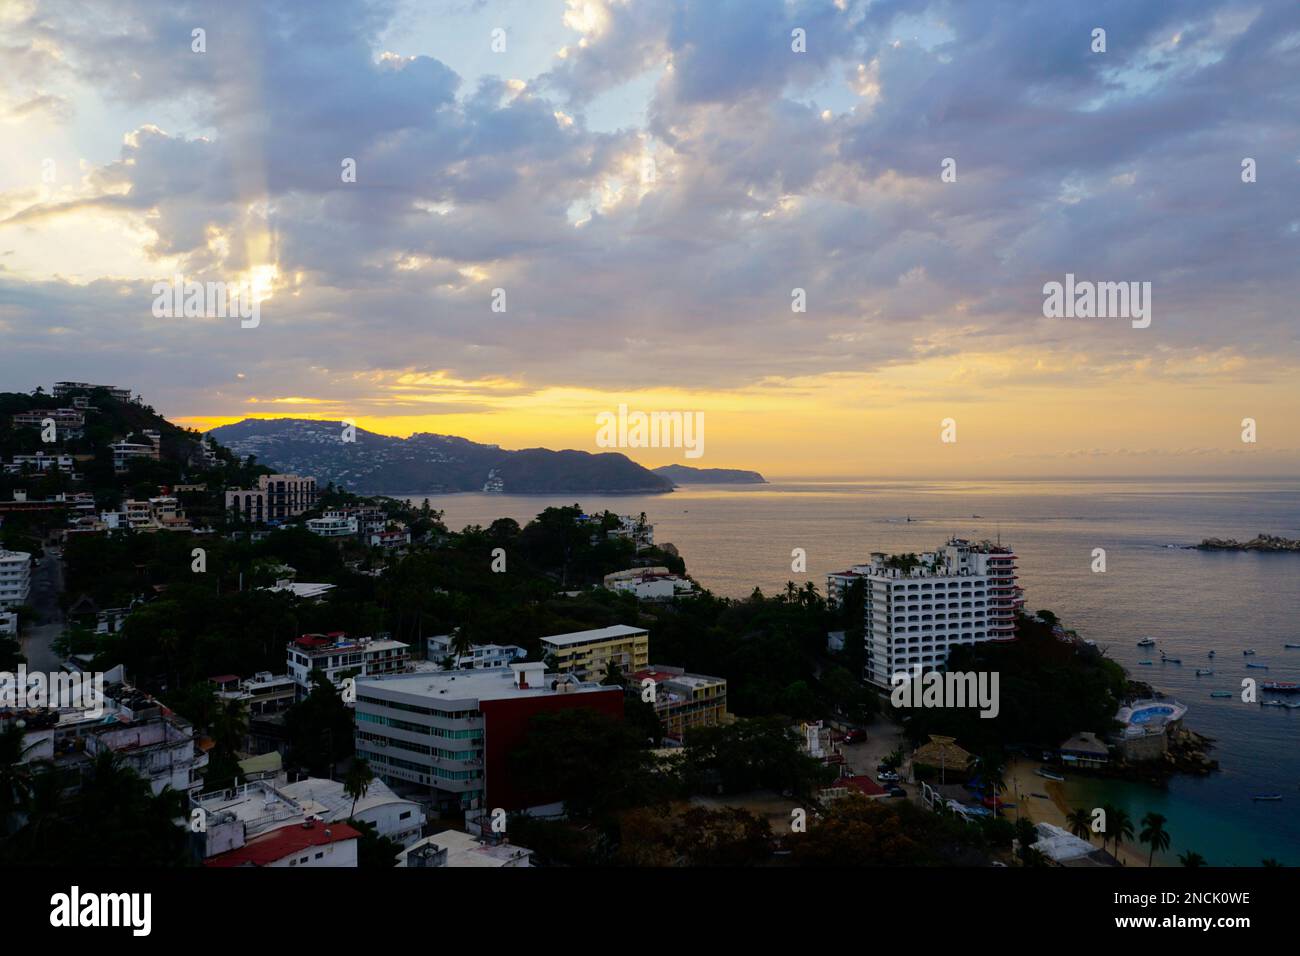 Las Playas und Caleta Viertel, Acapulco, Mexiko, Morgenaufgang. Stockfoto